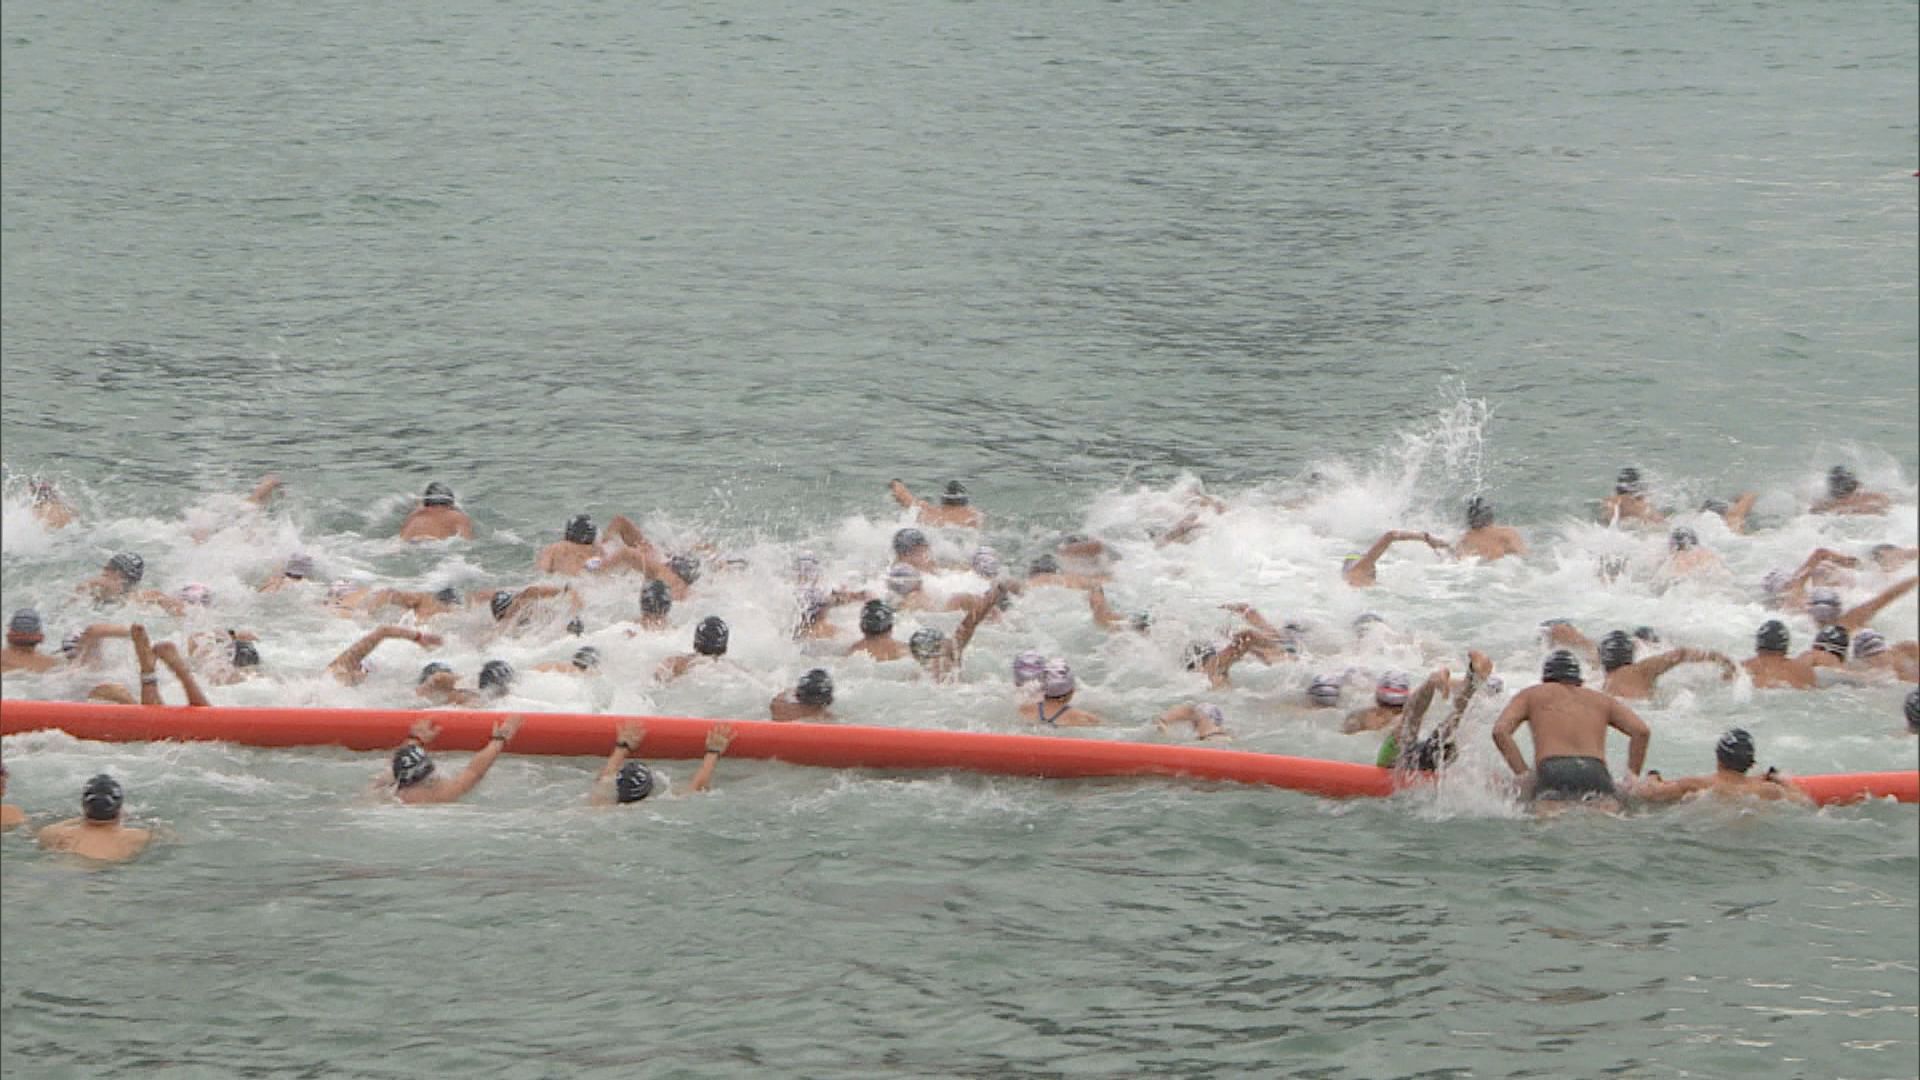 近3000人參加維港渡海泳 26人不適無法完成賽事